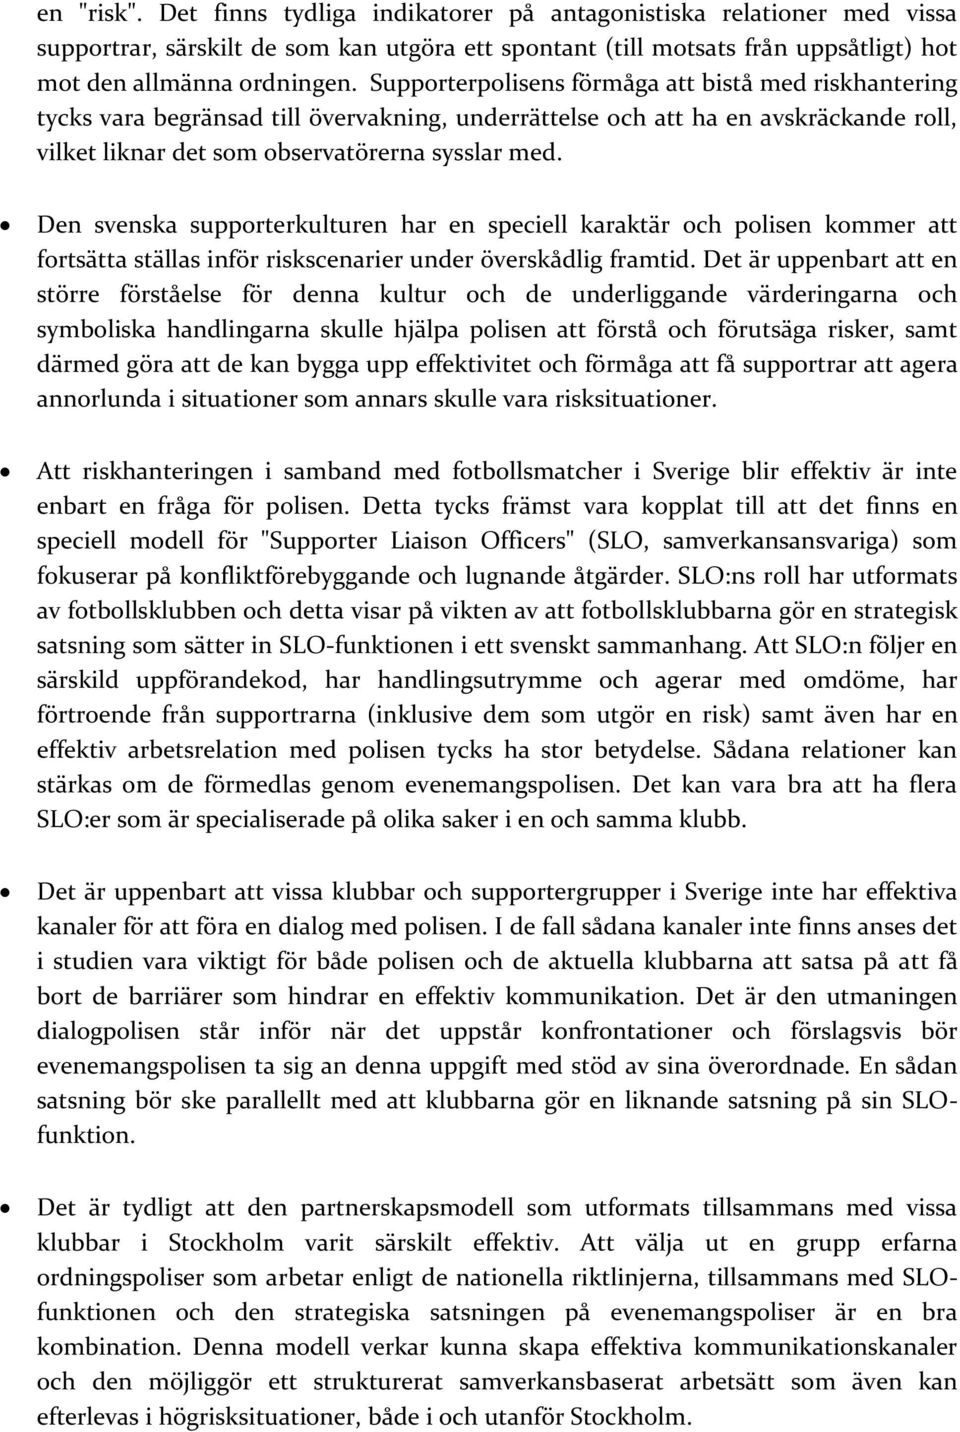 Den svenska supporterkulturen har en speciell karaktär och polisen kommer att fortsätta ställas inför riskscenarier under överskådlig framtid.